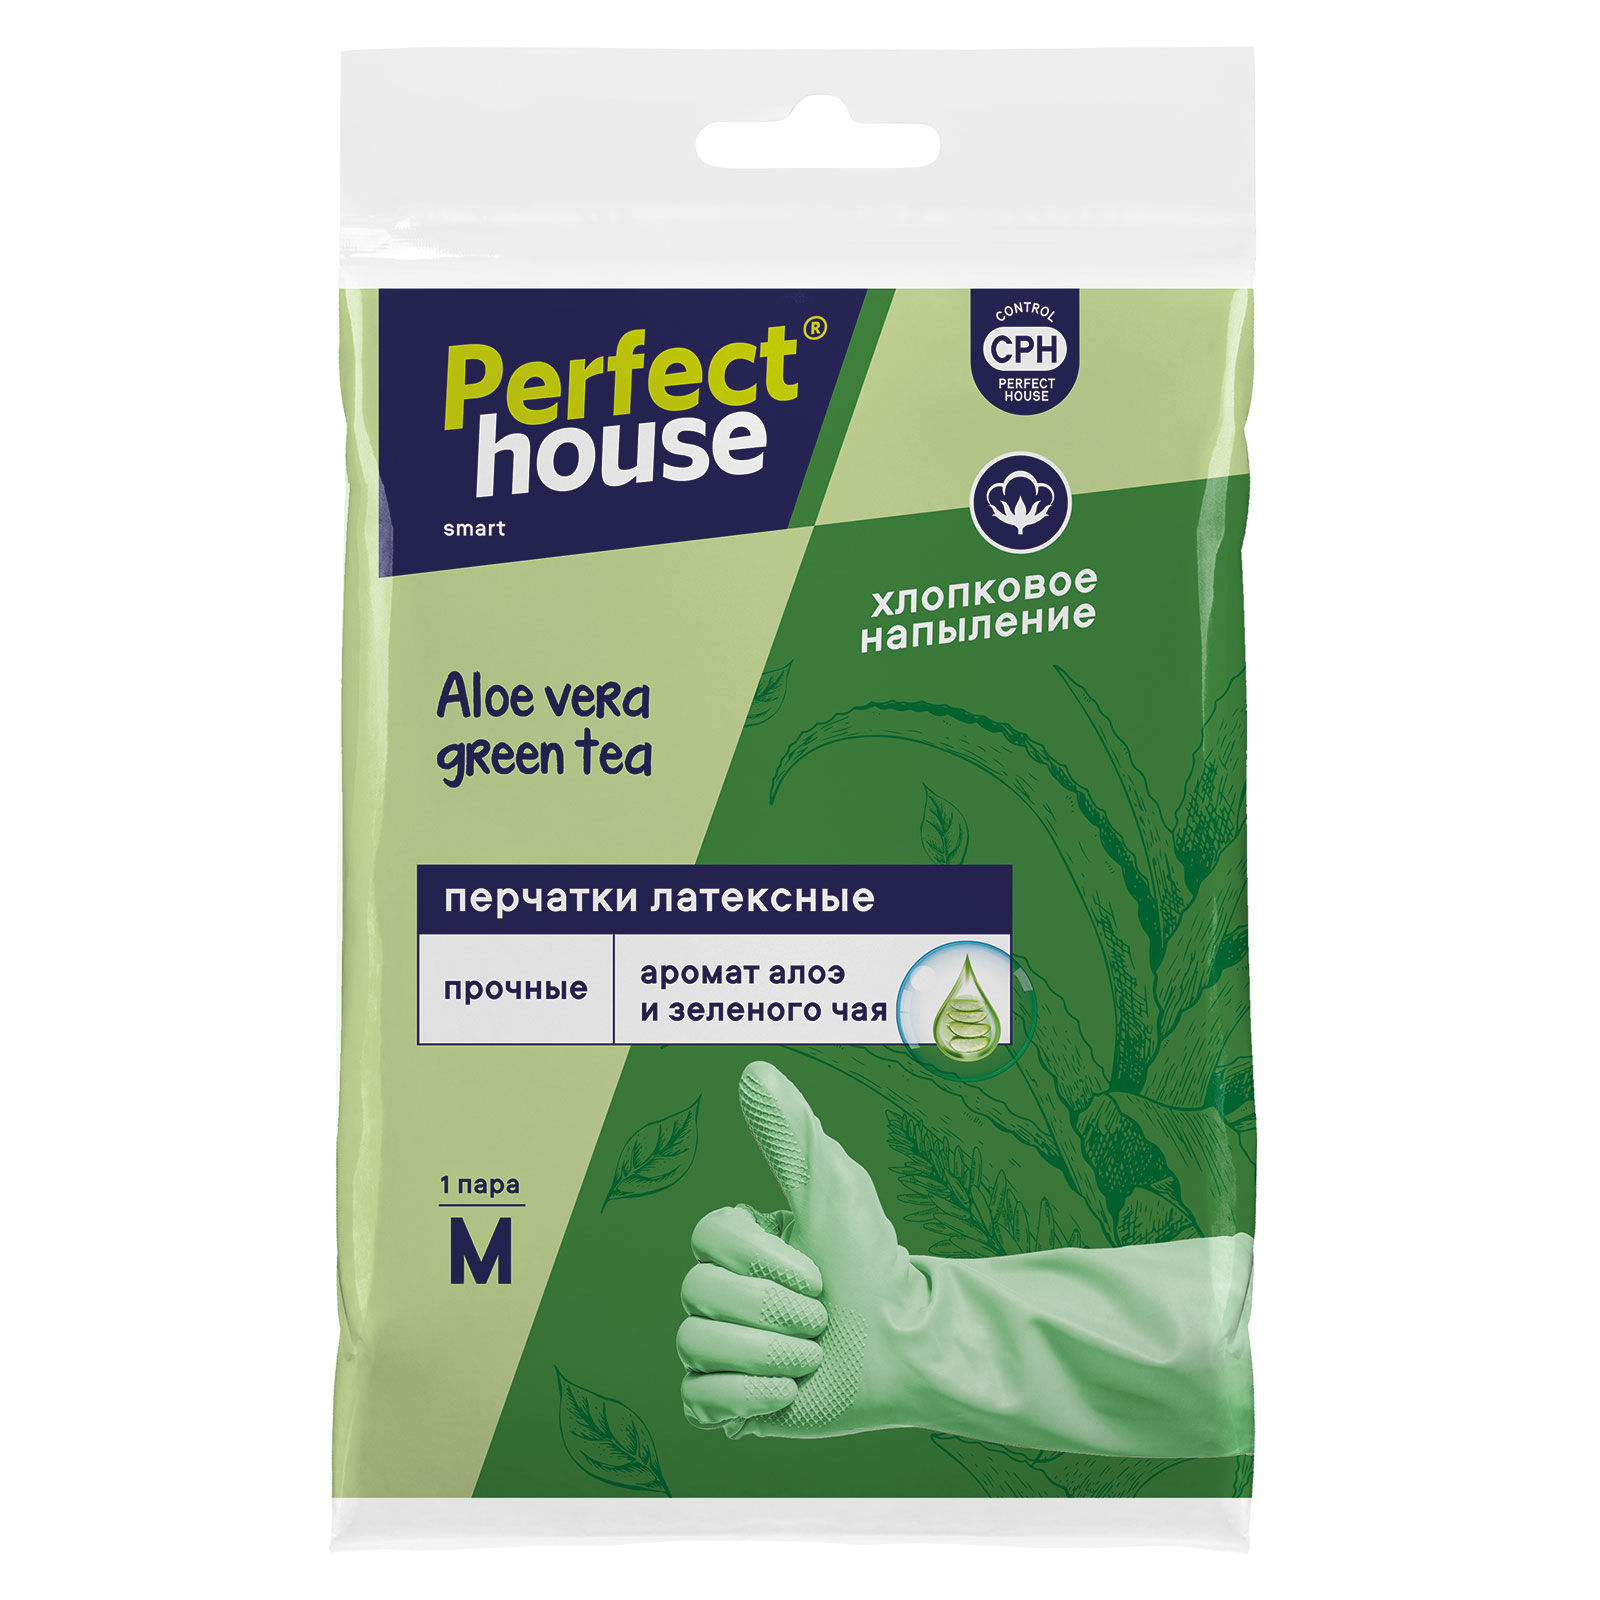 Перчатки с запахом Алое вера и зеленого чая, размер М Perfect House